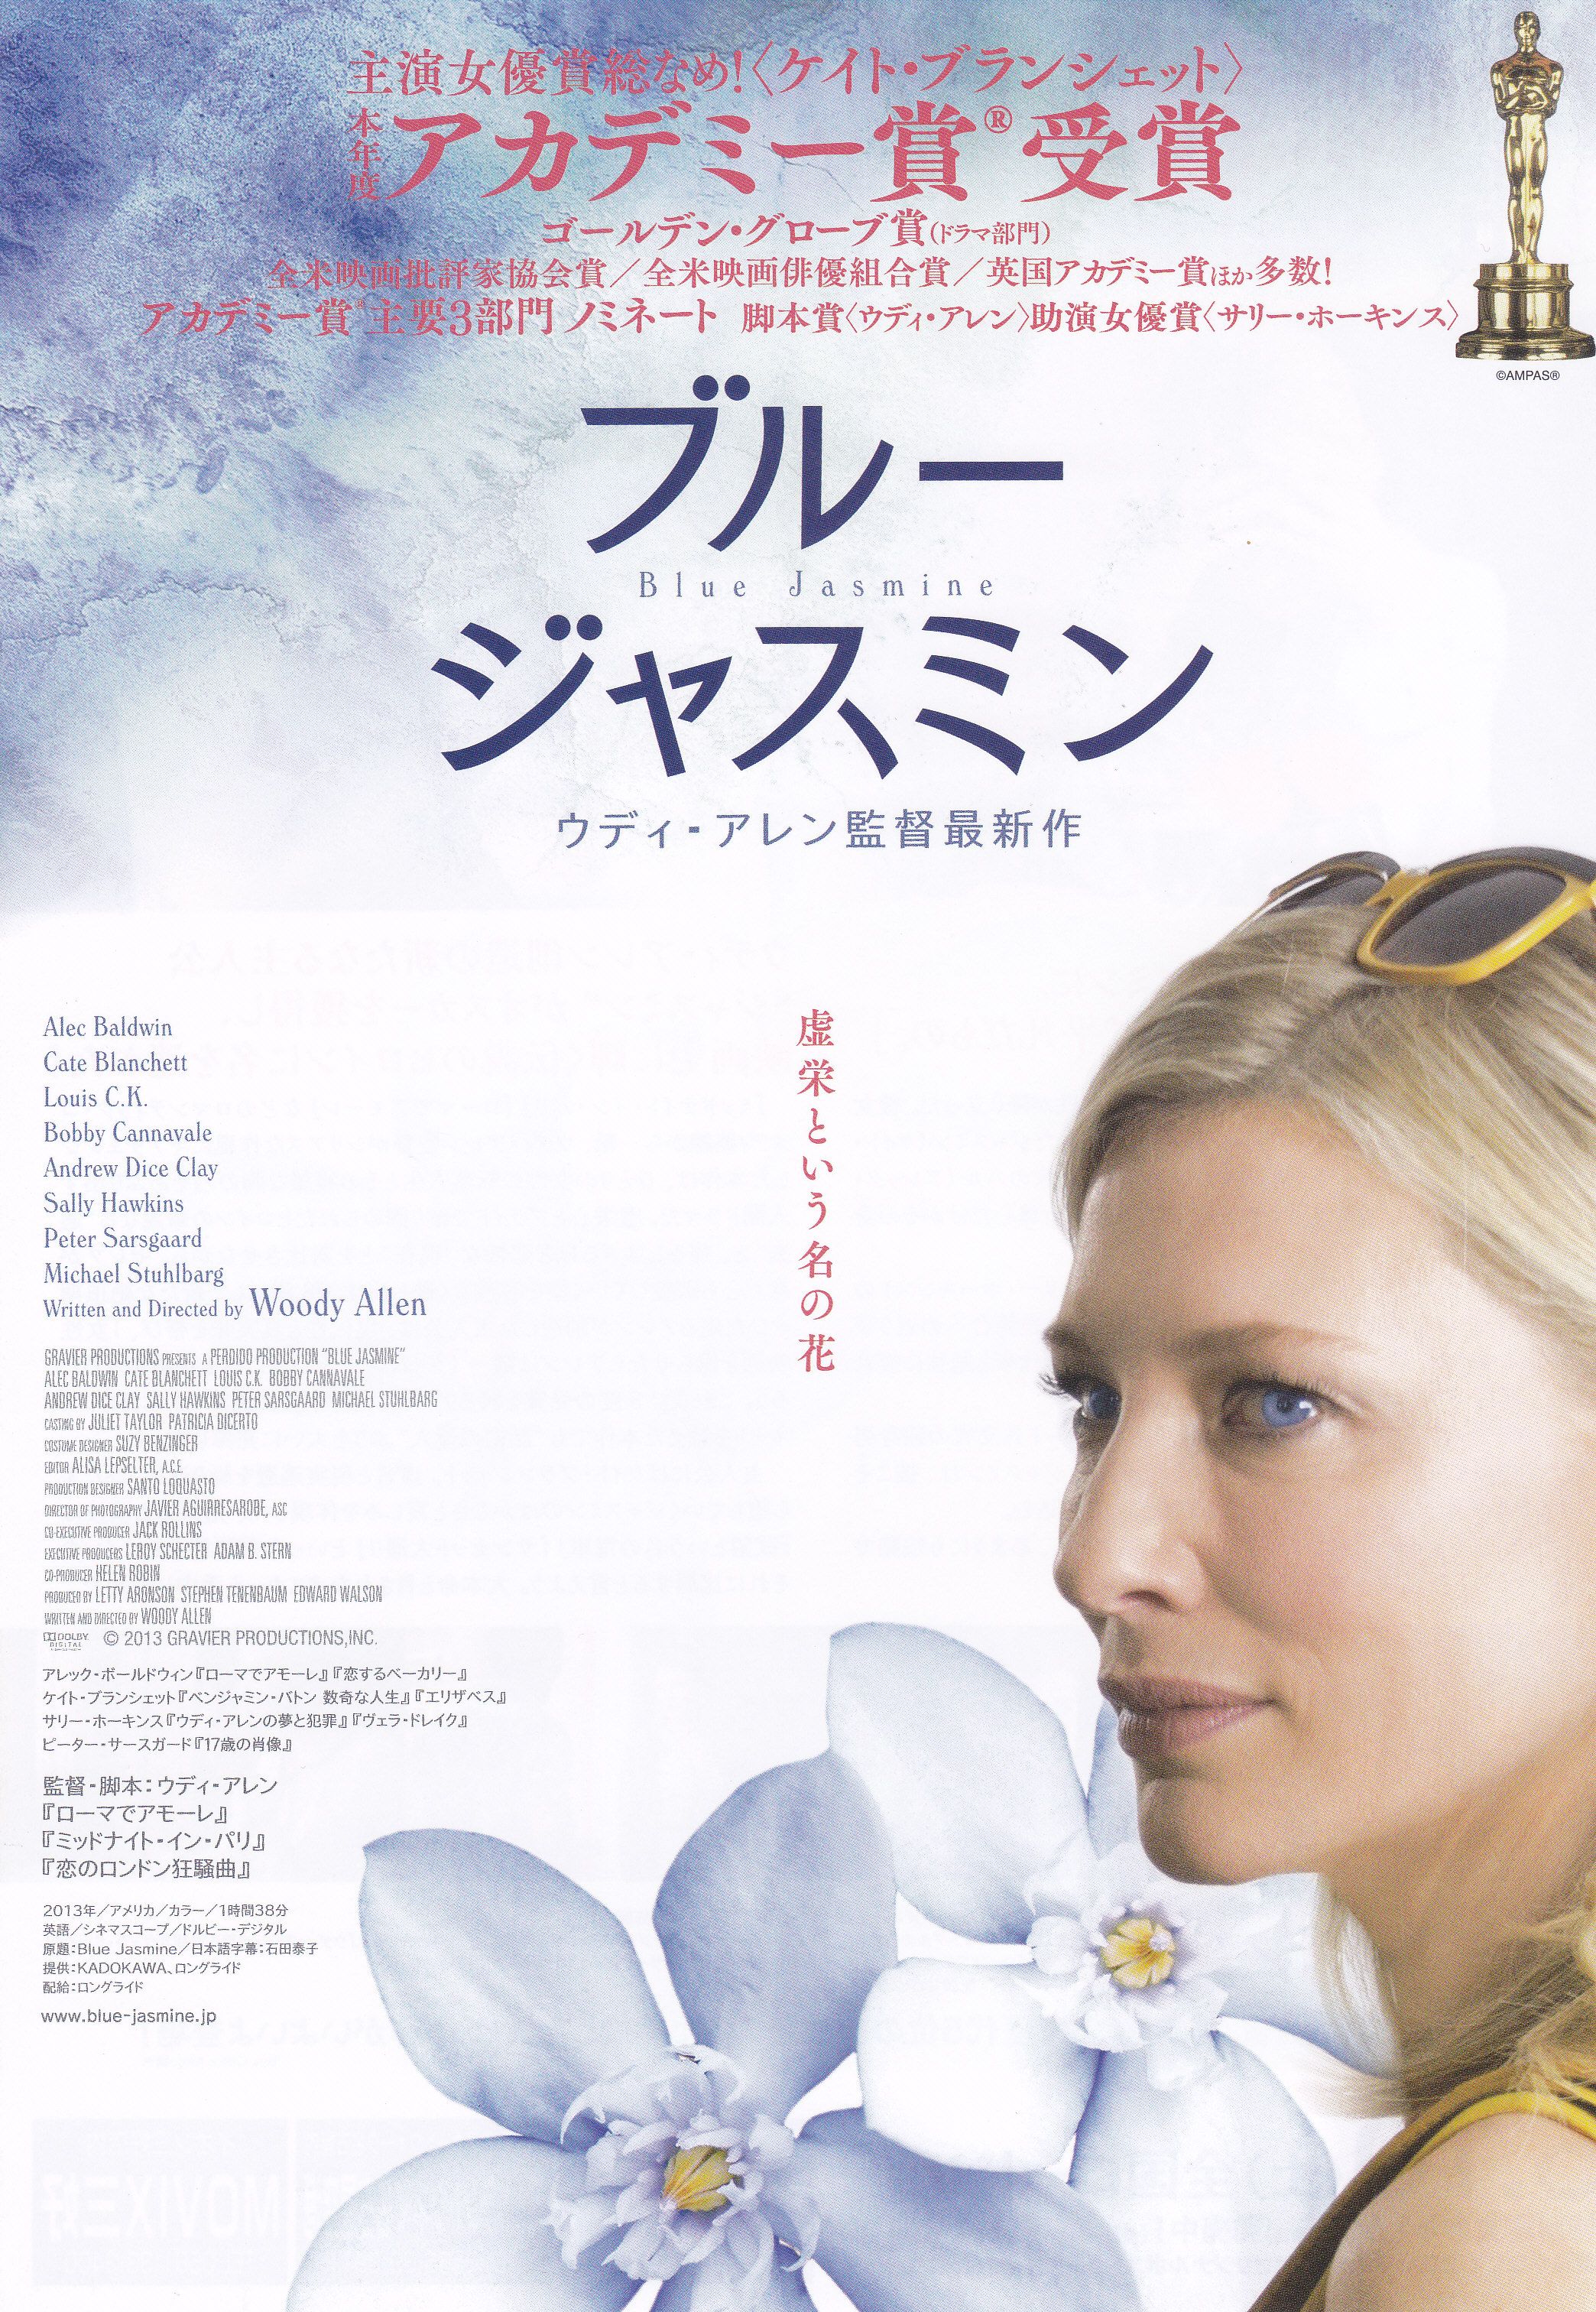 Blue Jasmine 13 Japanese Chirashi Poster Woody Allen Steemit